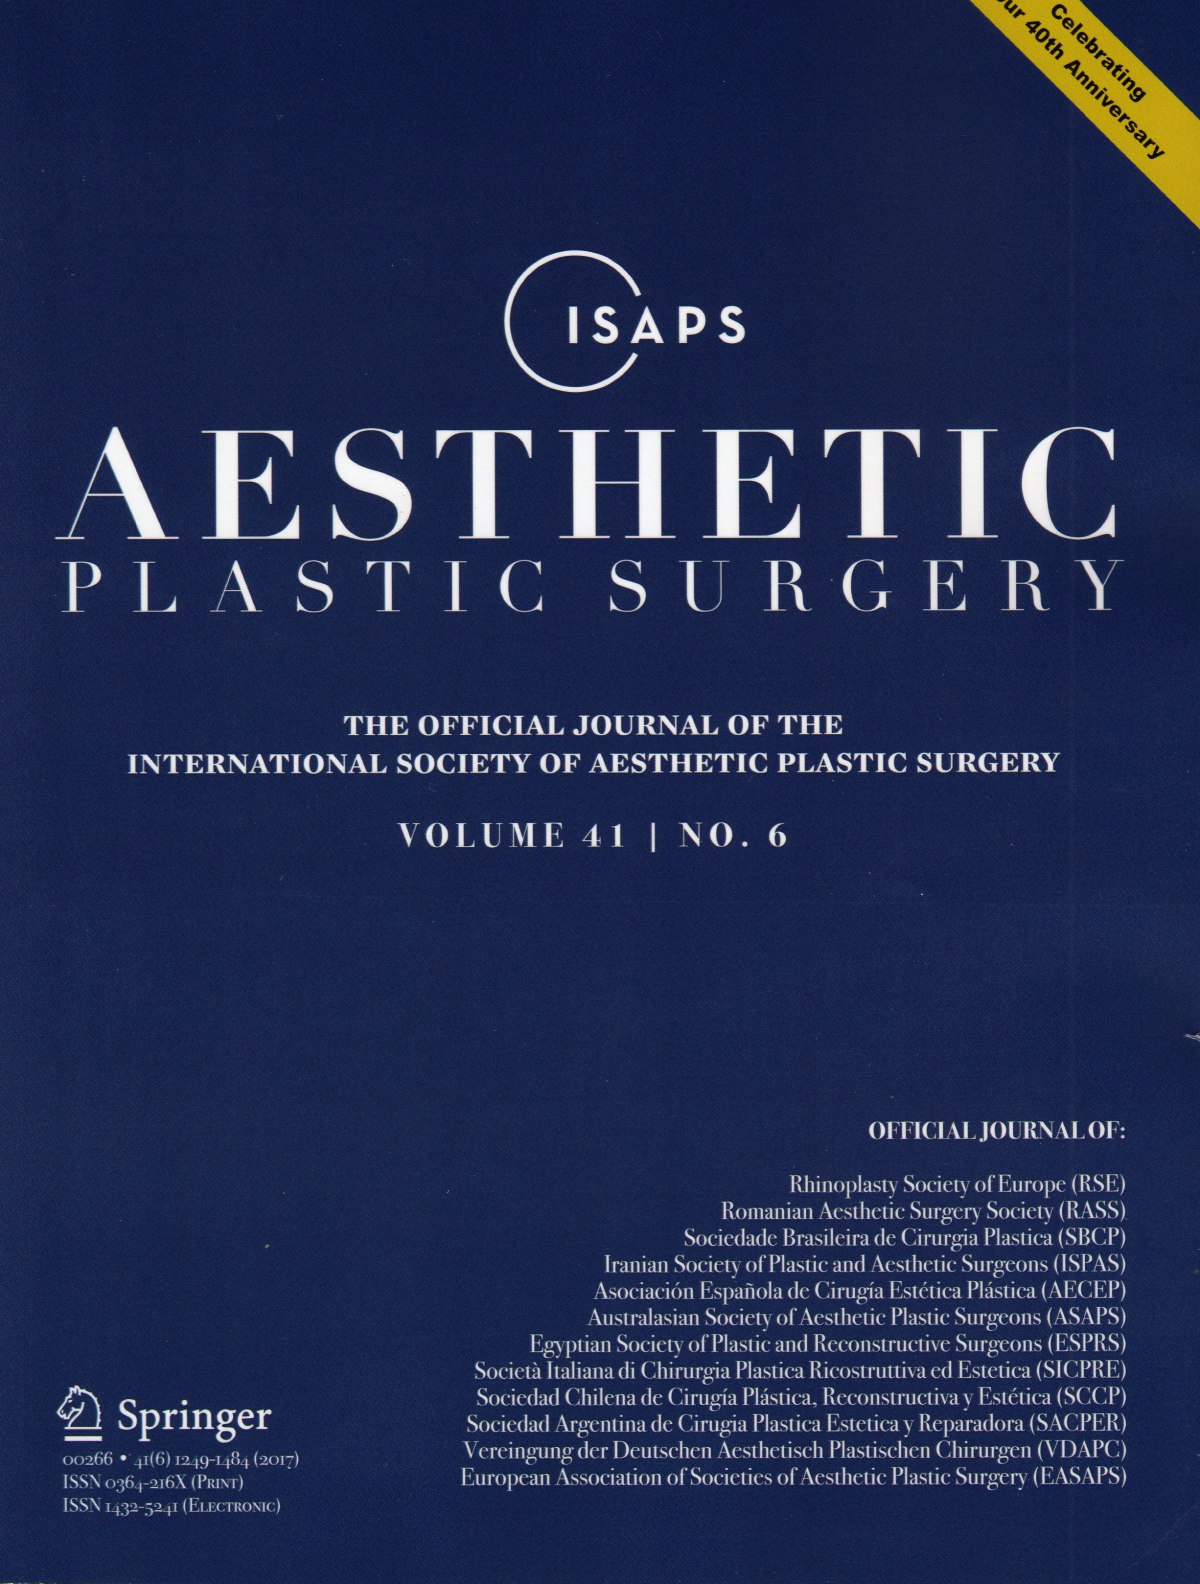 国际“美容整型外科”医学期刊来函邀请担任论文审稿人